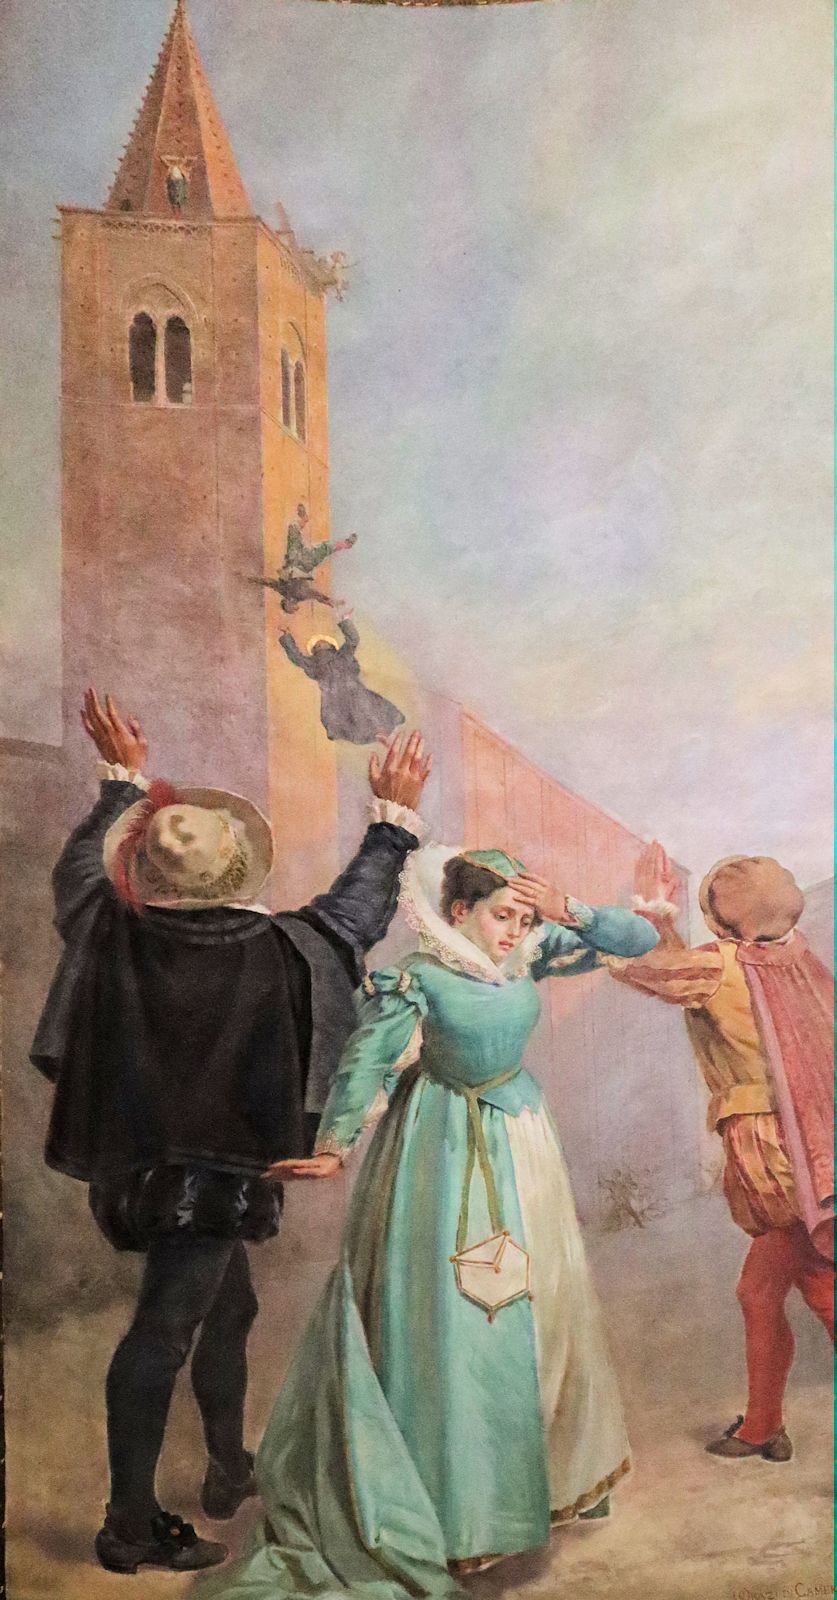 Antonius rettet ein vom Turm stürzendes Kind, Bild in der Kirche Sant'Agostino in Amandola